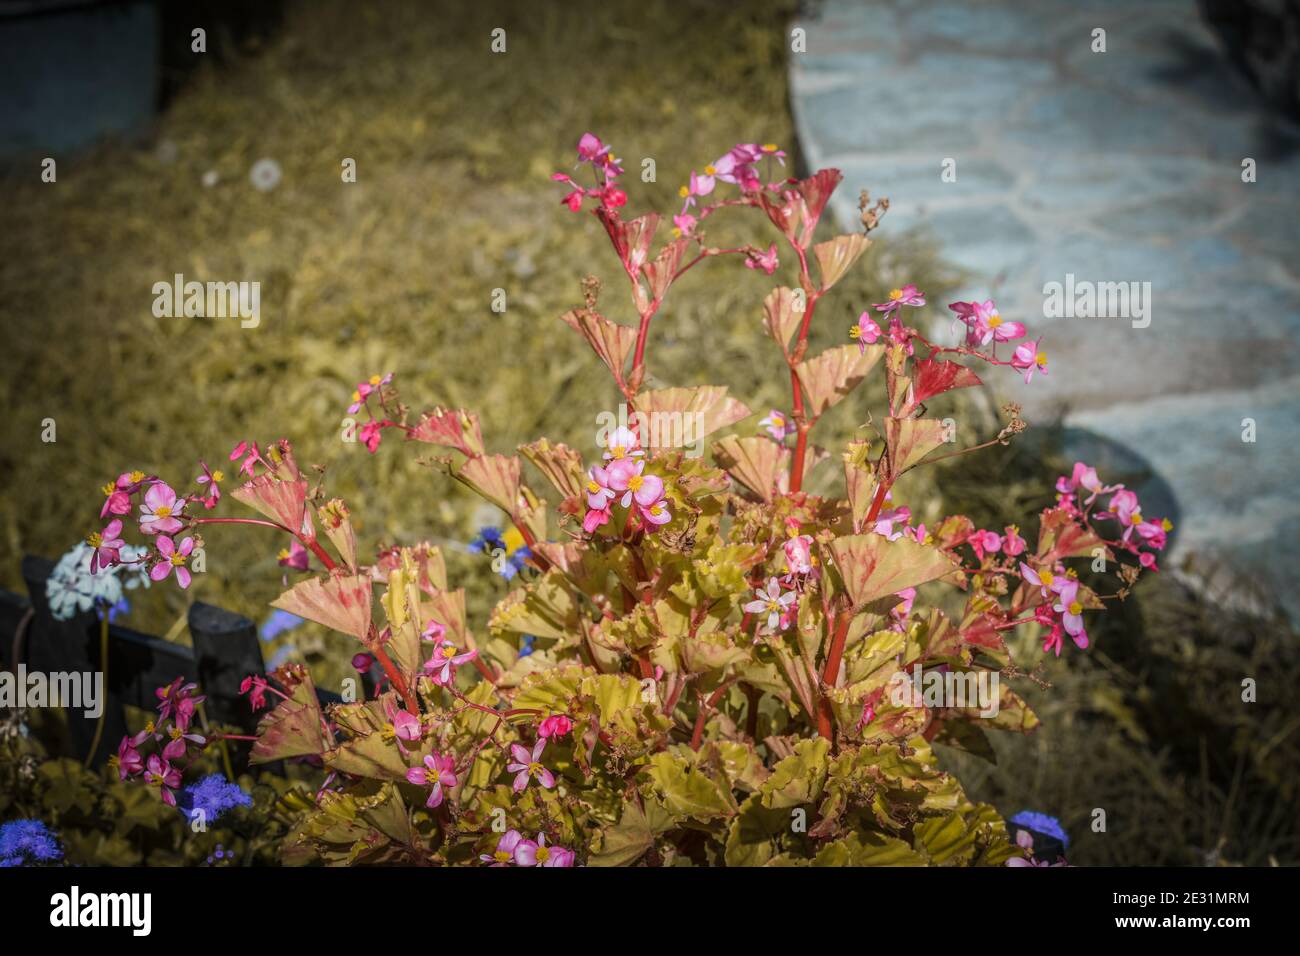 Begonias, semperflorens begonias, in giardino, begonia in vaso. Modello di bello naturale giallo e arancio begonia fiori texture piena fioritura i Foto Stock